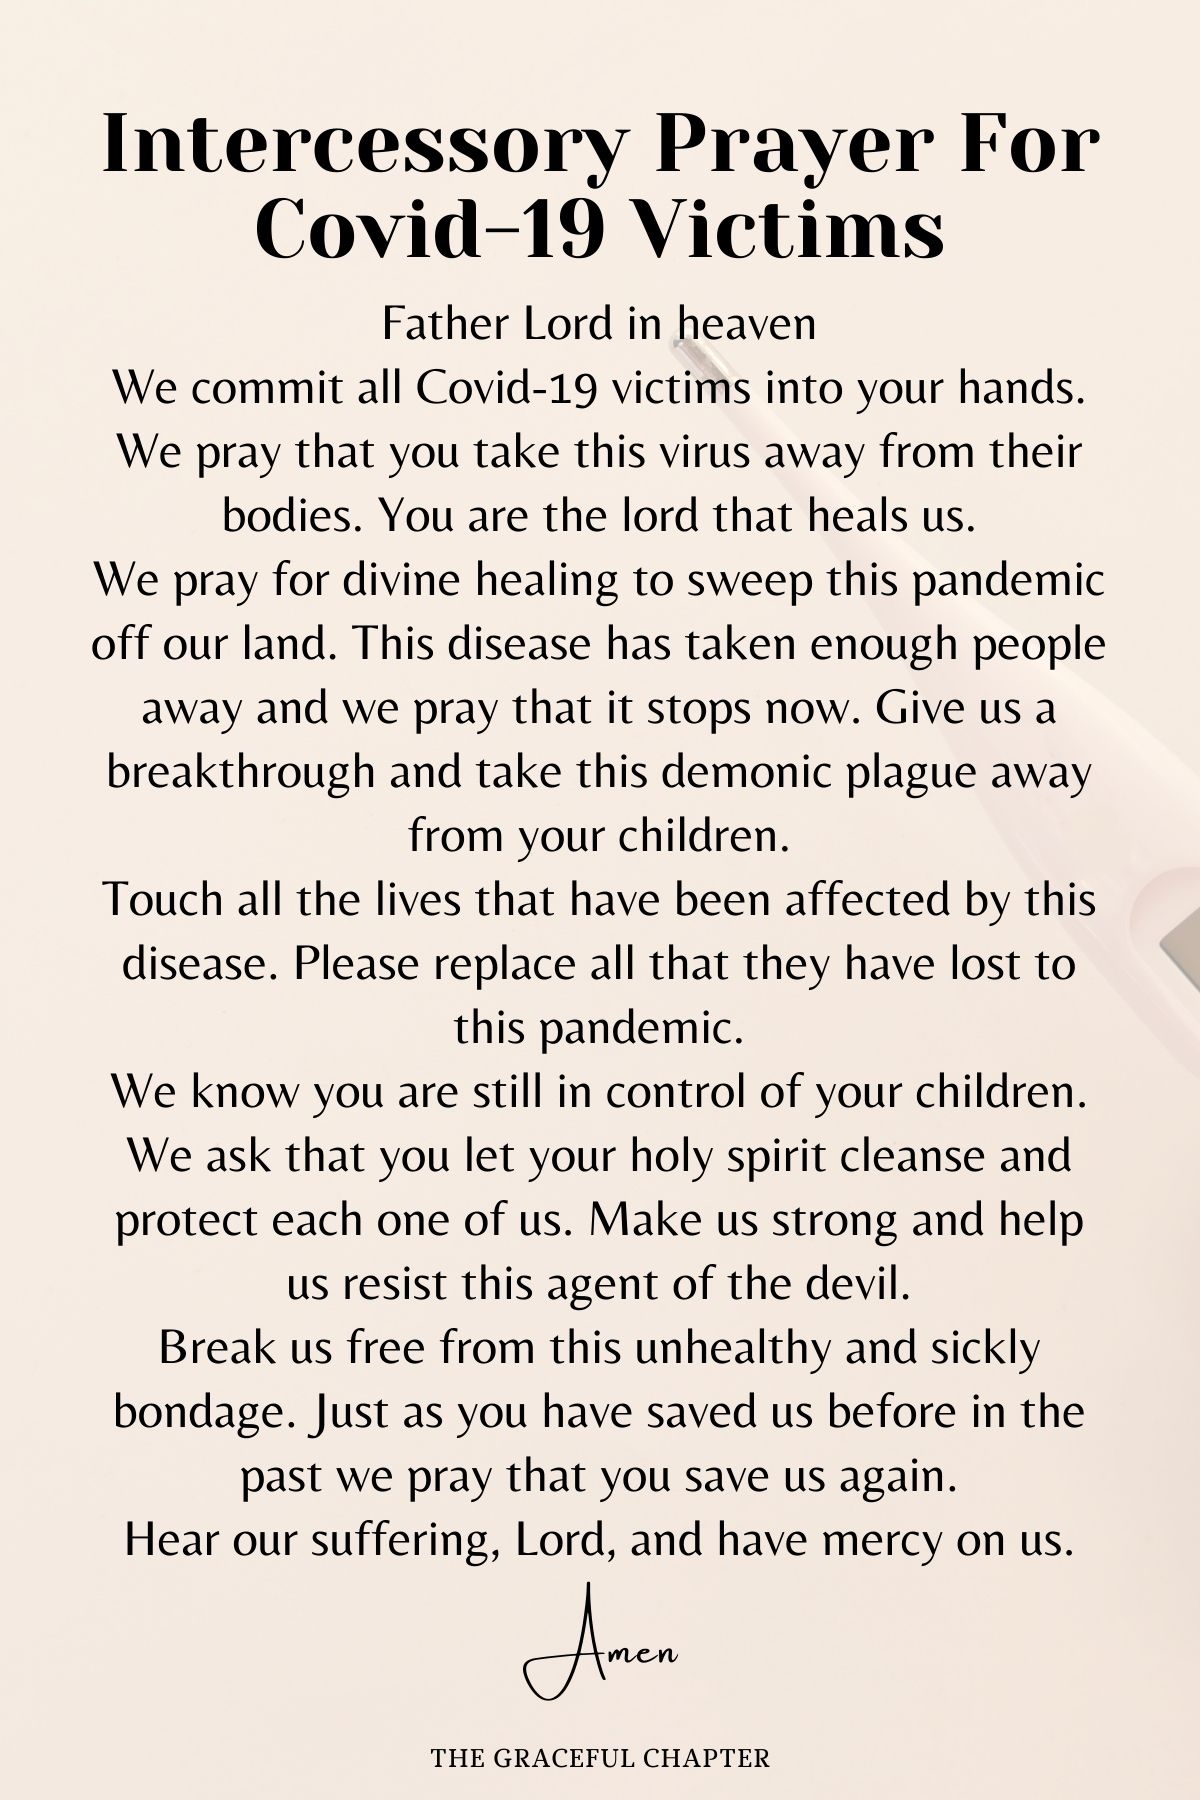 Intercessory prayer for Covid-19 victims